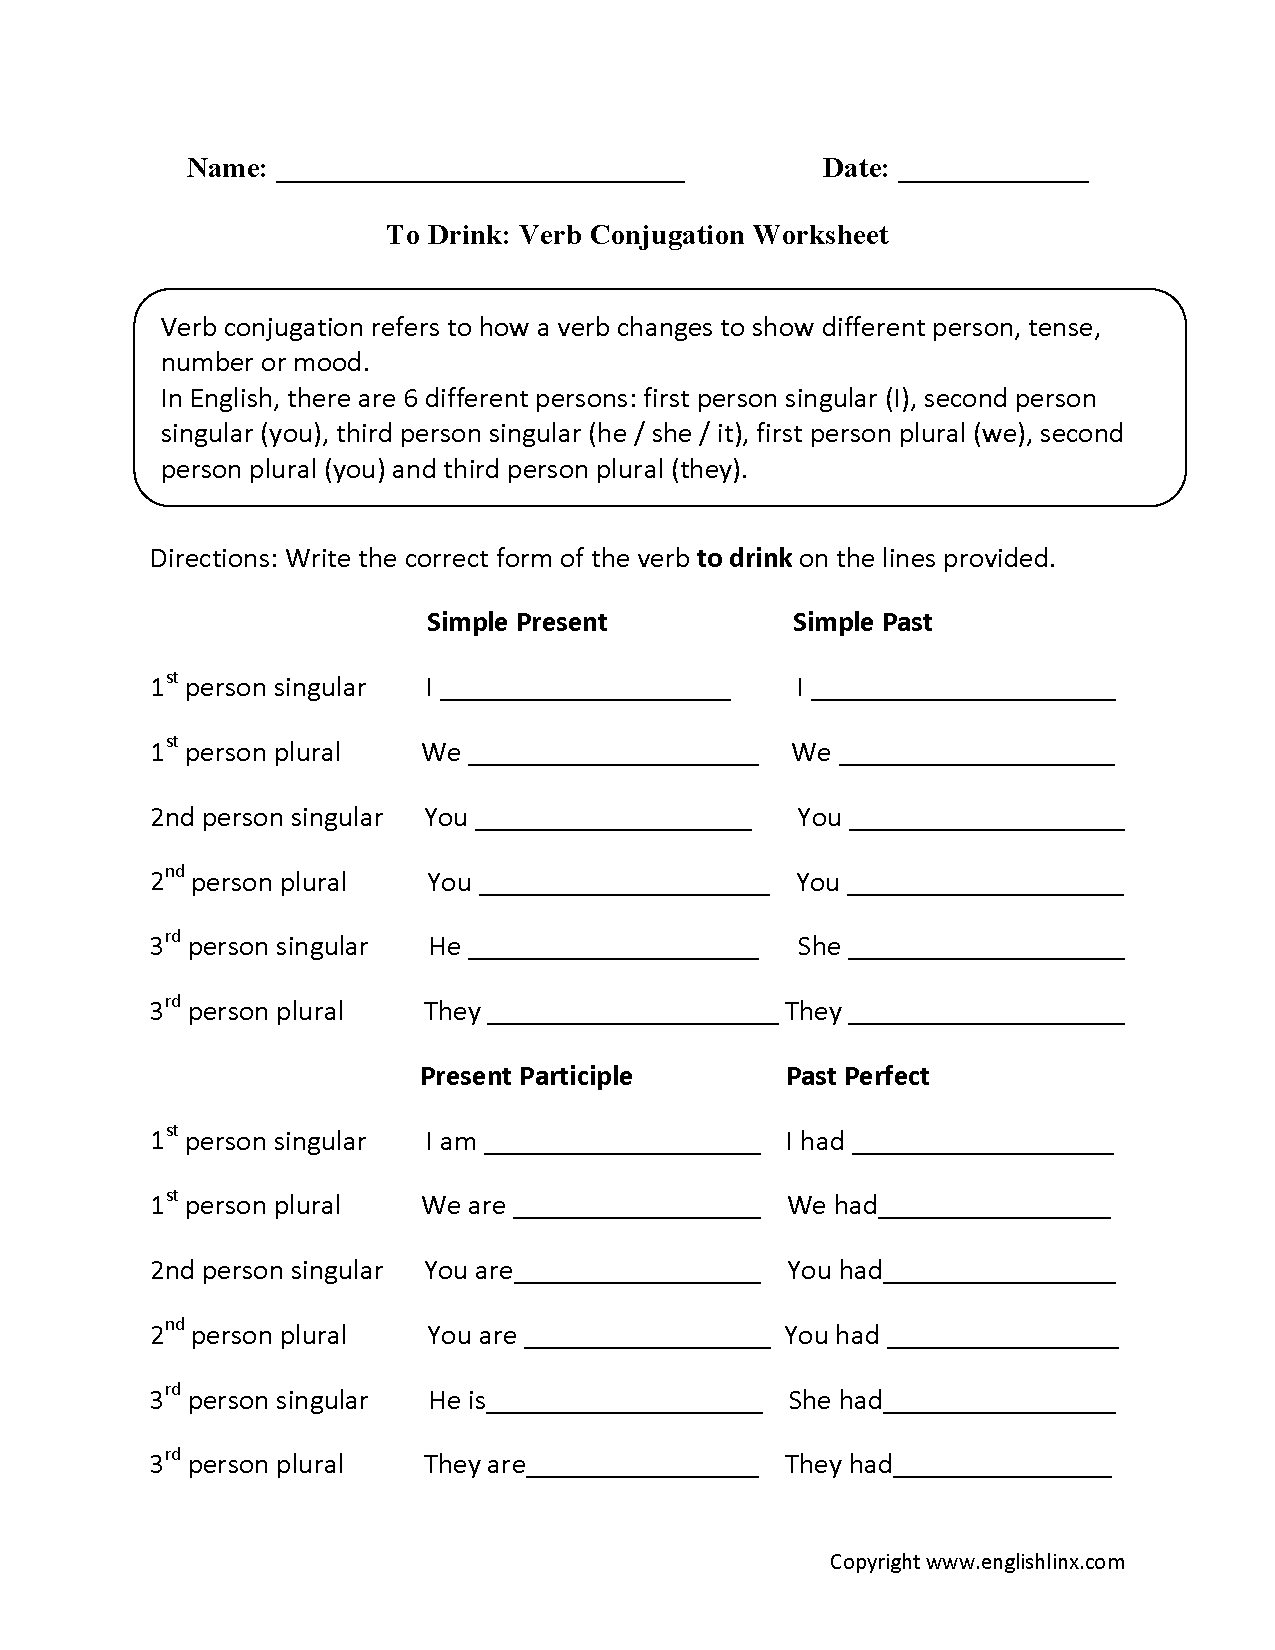 To Drink Verb Conjugation Worksheets